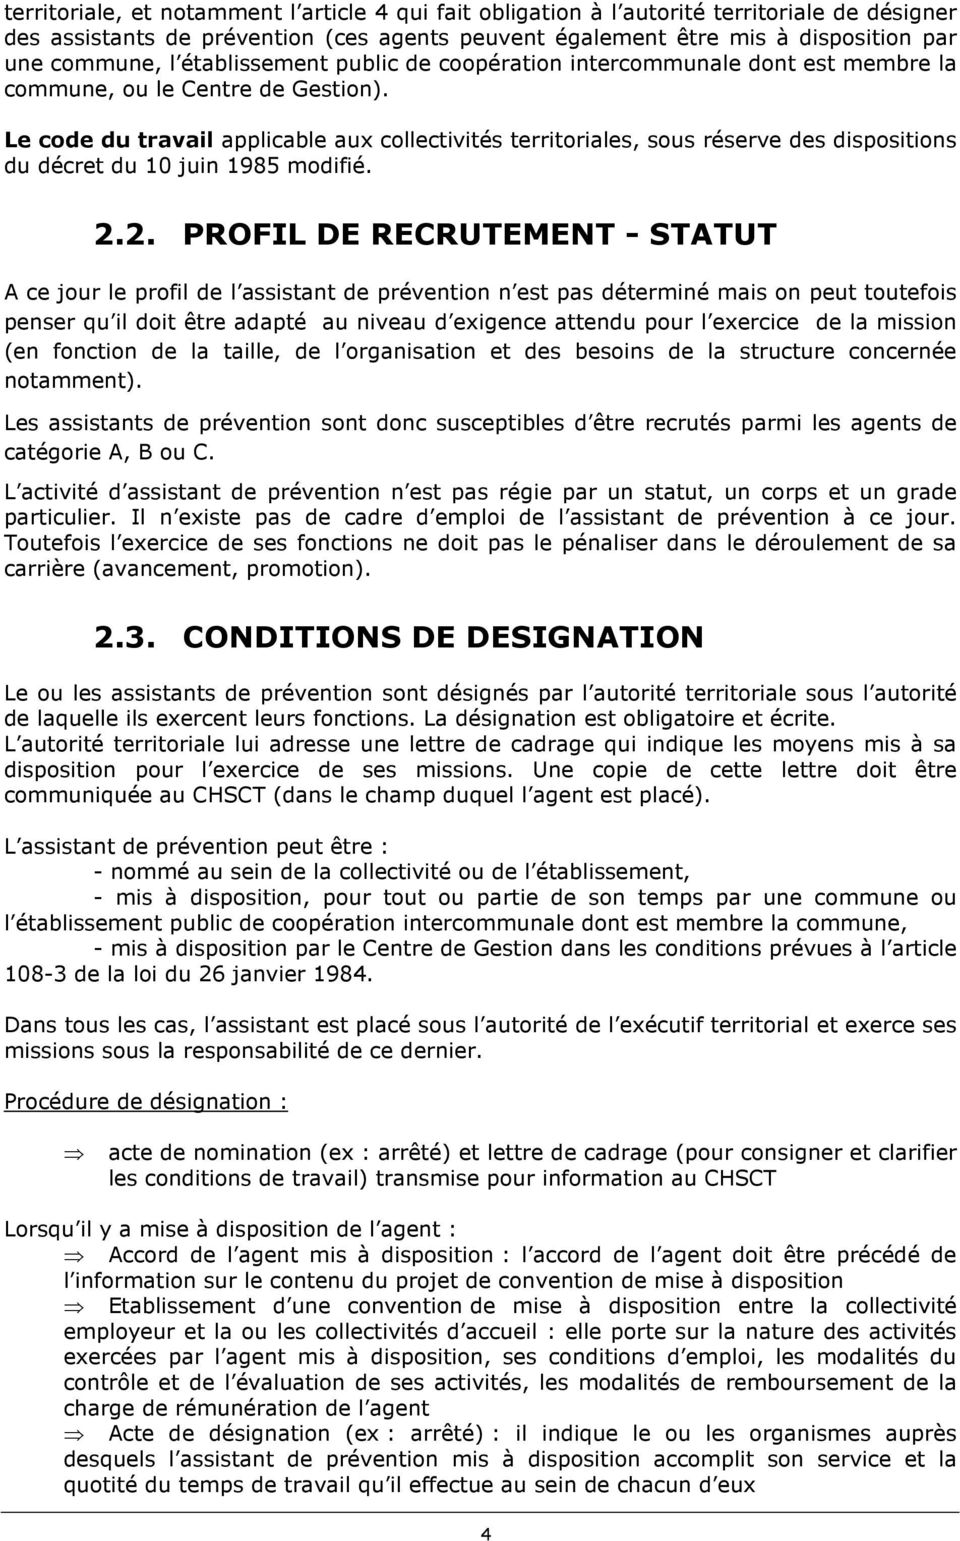 Le code du travail applicable aux collectivités territoriales, sous réserve des dispositions du décret du 10 juin 1985 modifié. 2.